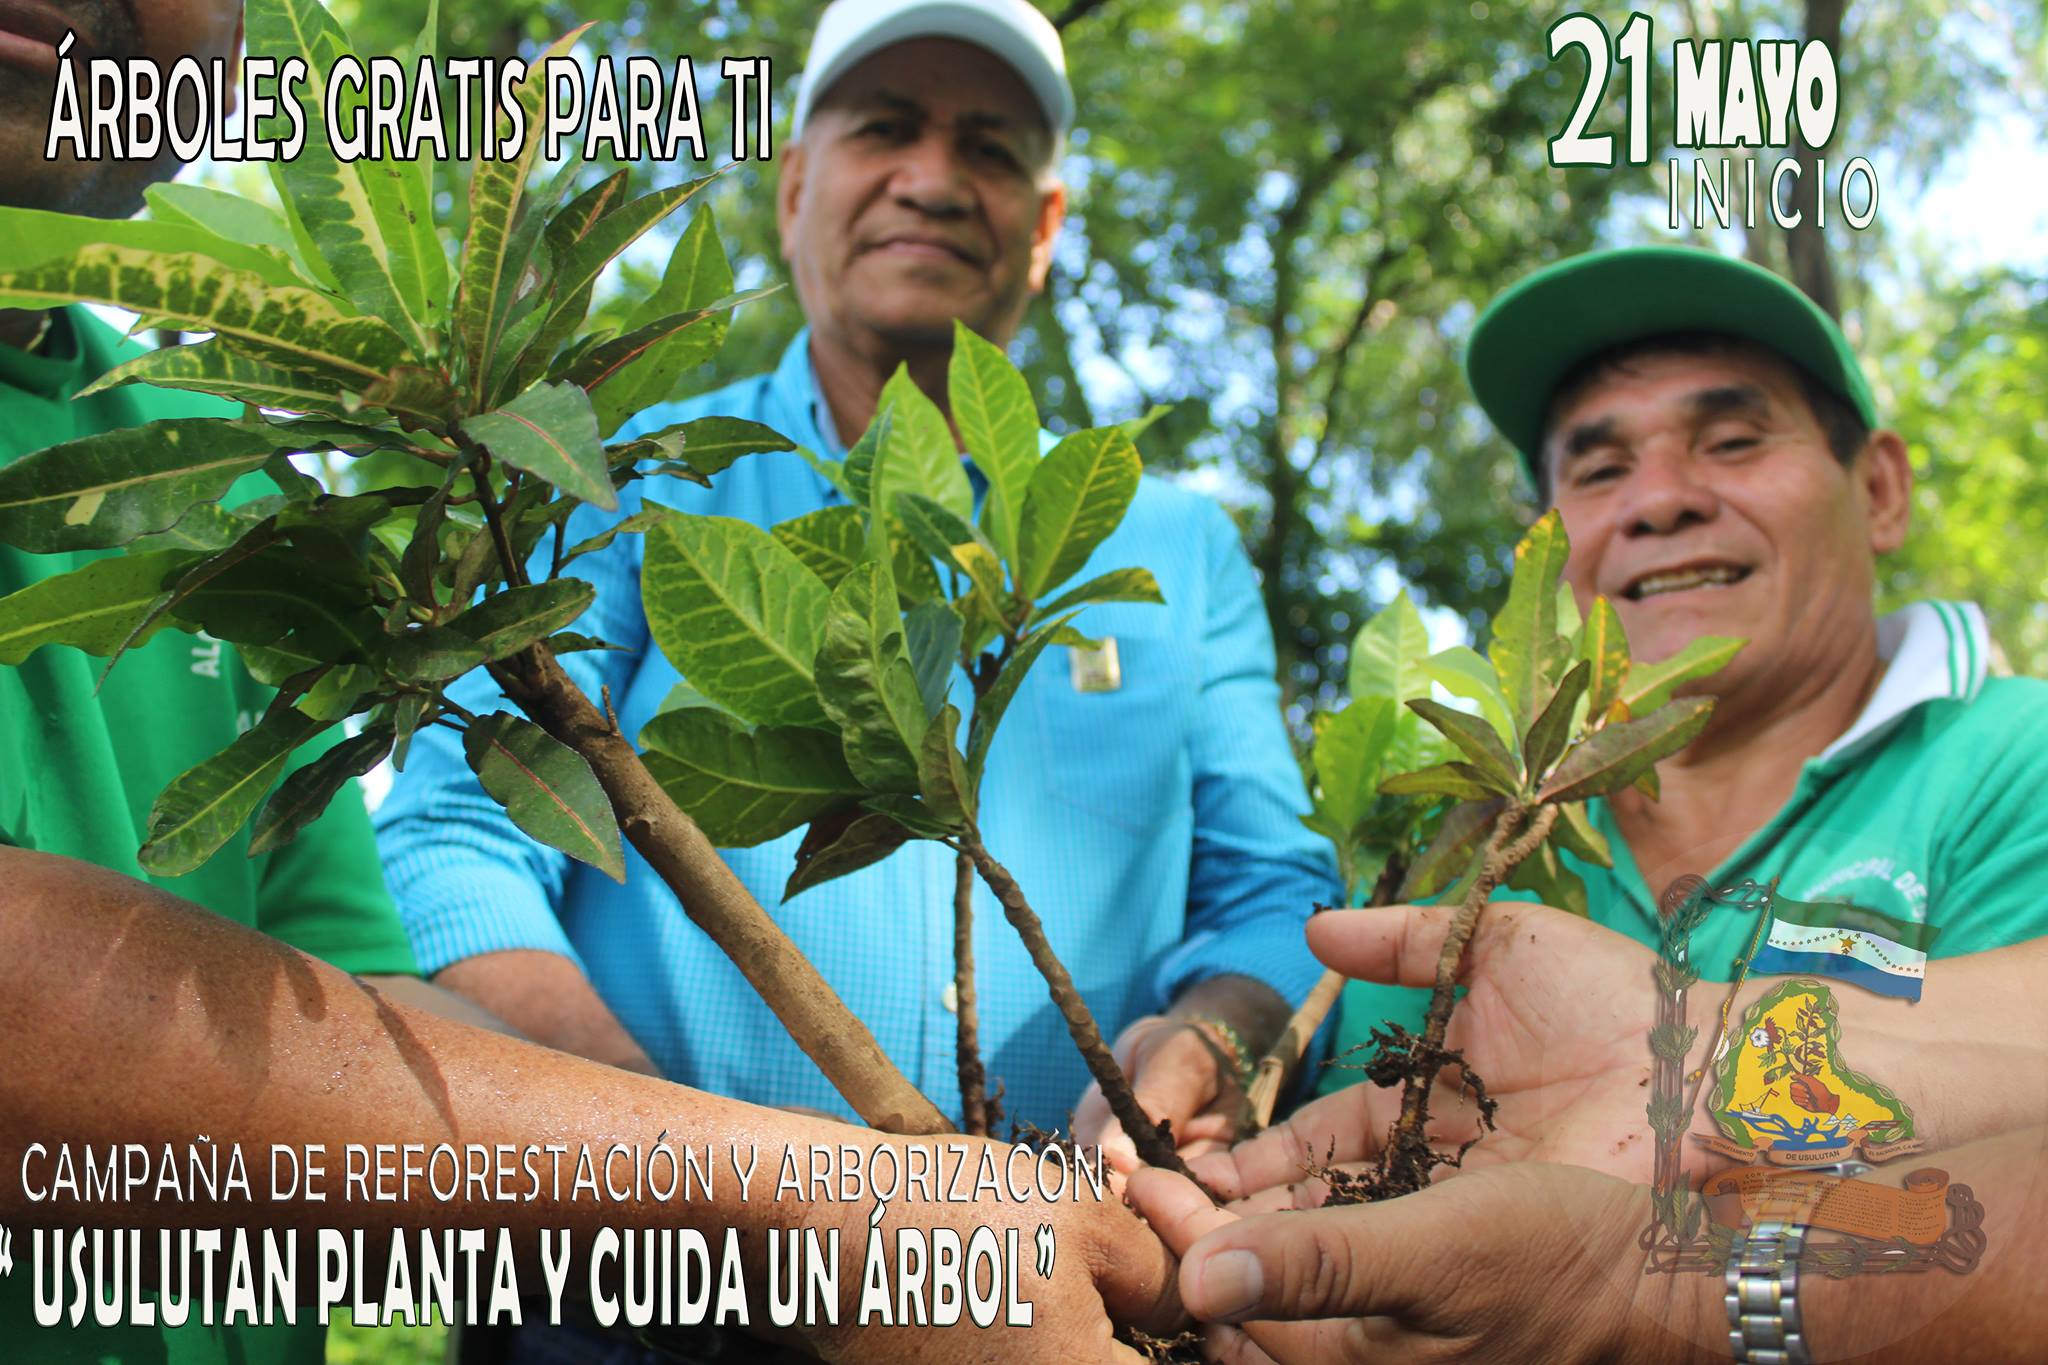 Campaña “Usulután Planta y Cuida un Árbol”. Reforestacion